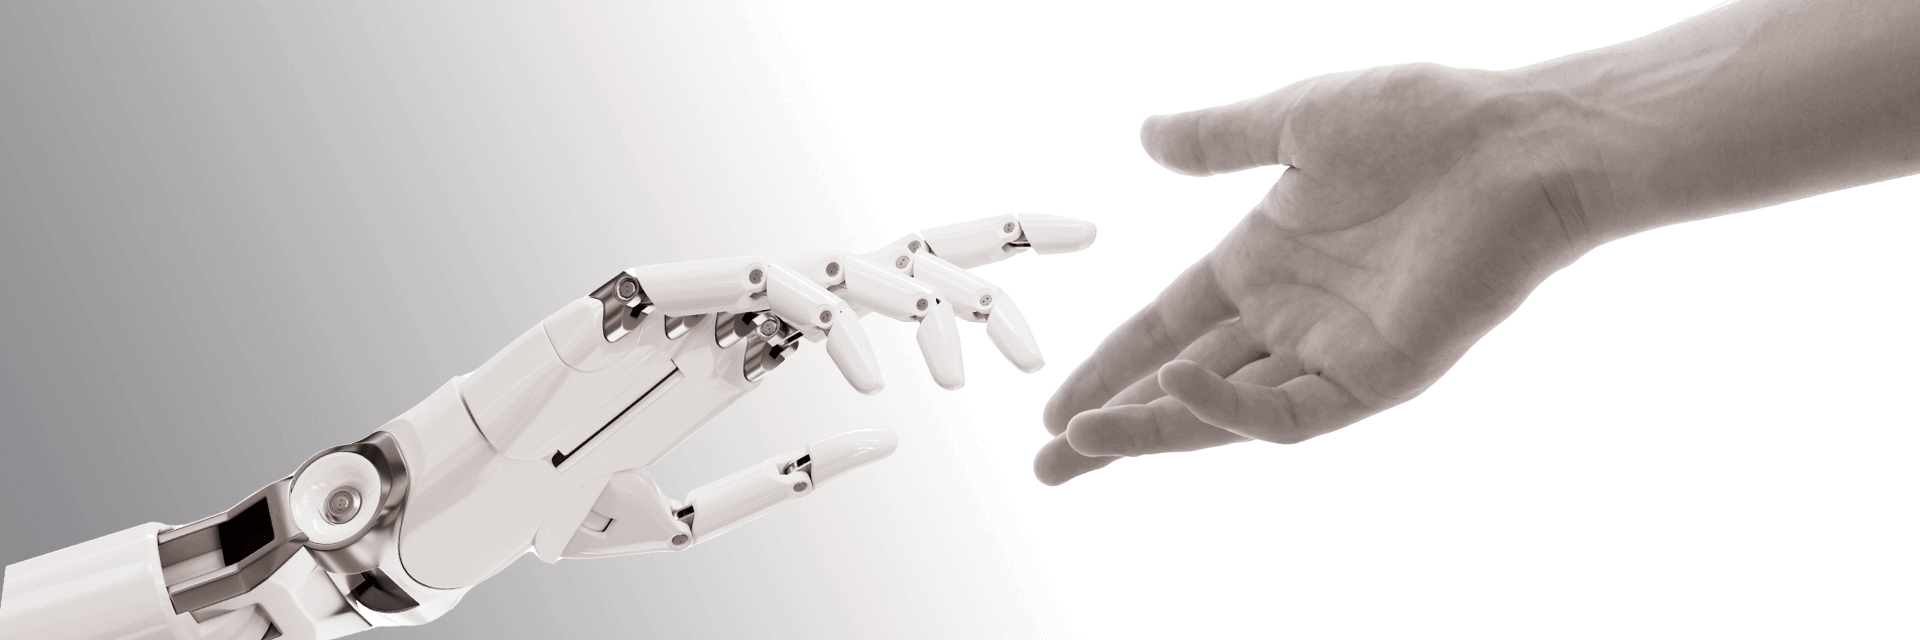 Una mano robótica y otra humana se tendieron la mano